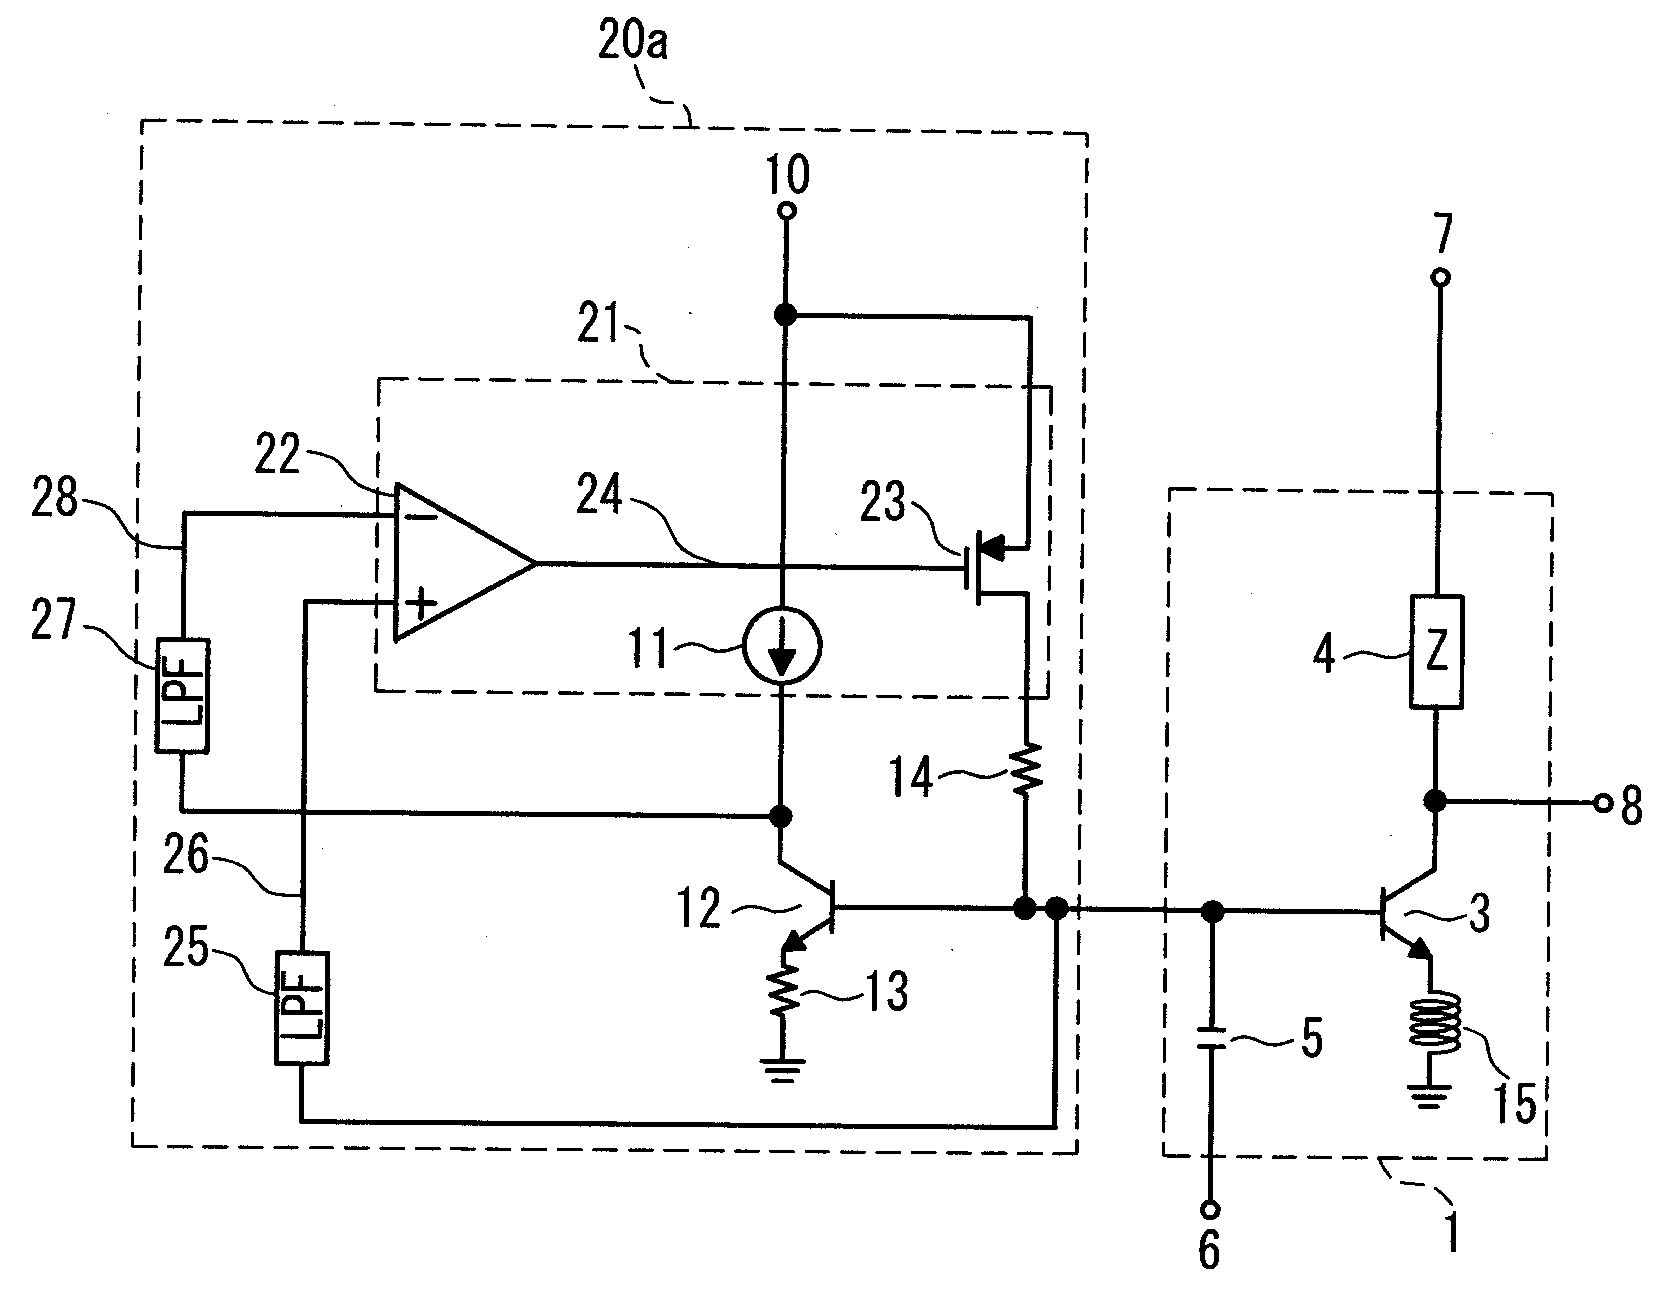 Power amplifier